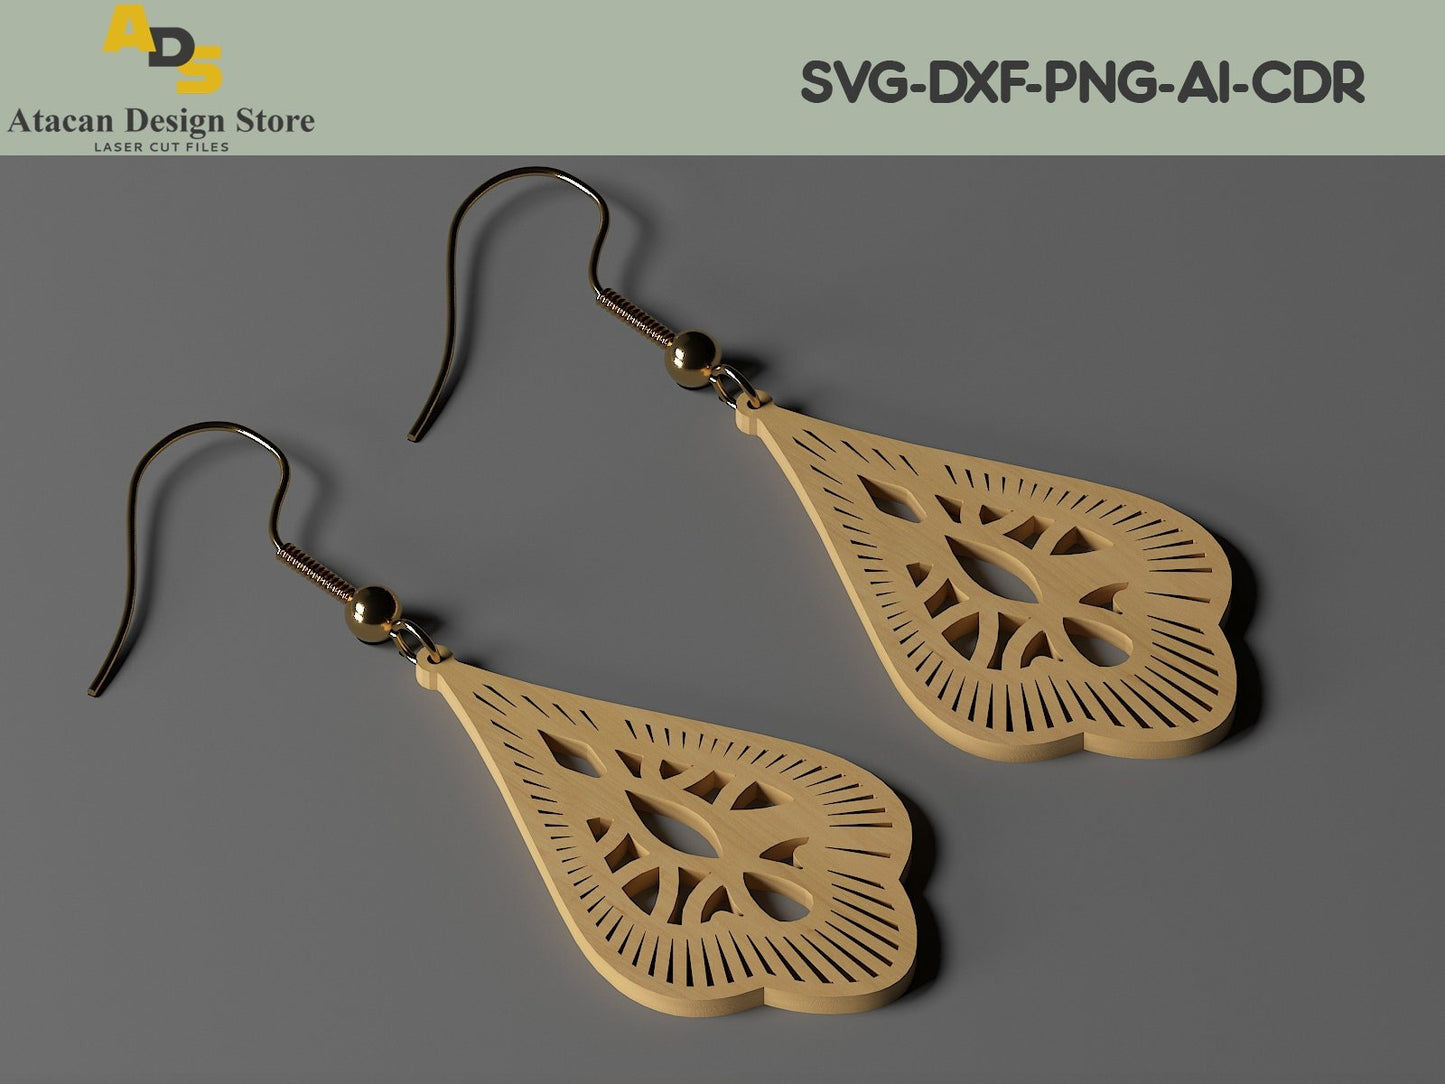 Laser Cut Jewelry Earrings / Teardrop Pendants Vector Files SVG, DXF, CDR ADS219